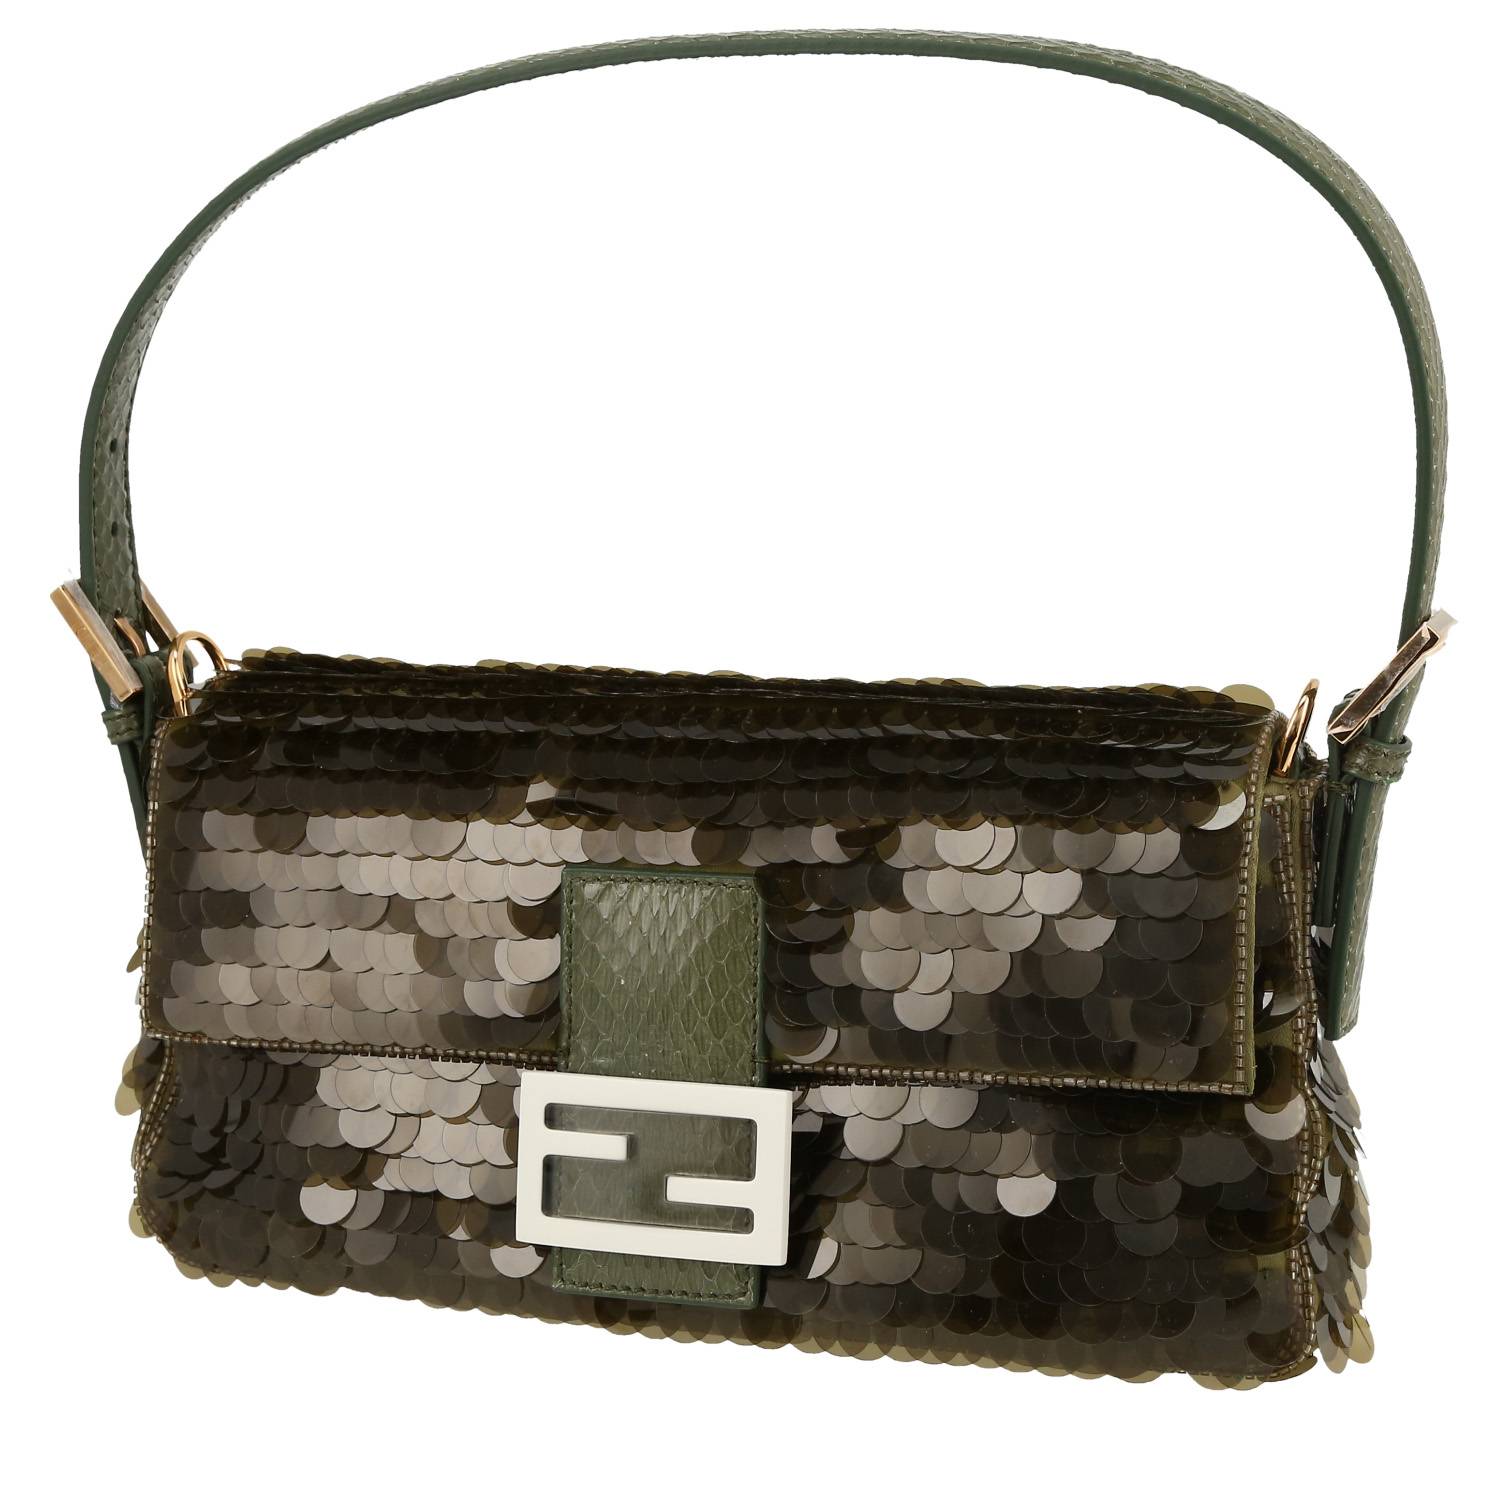 Baguette Handbag In Khaki Paillette And Python